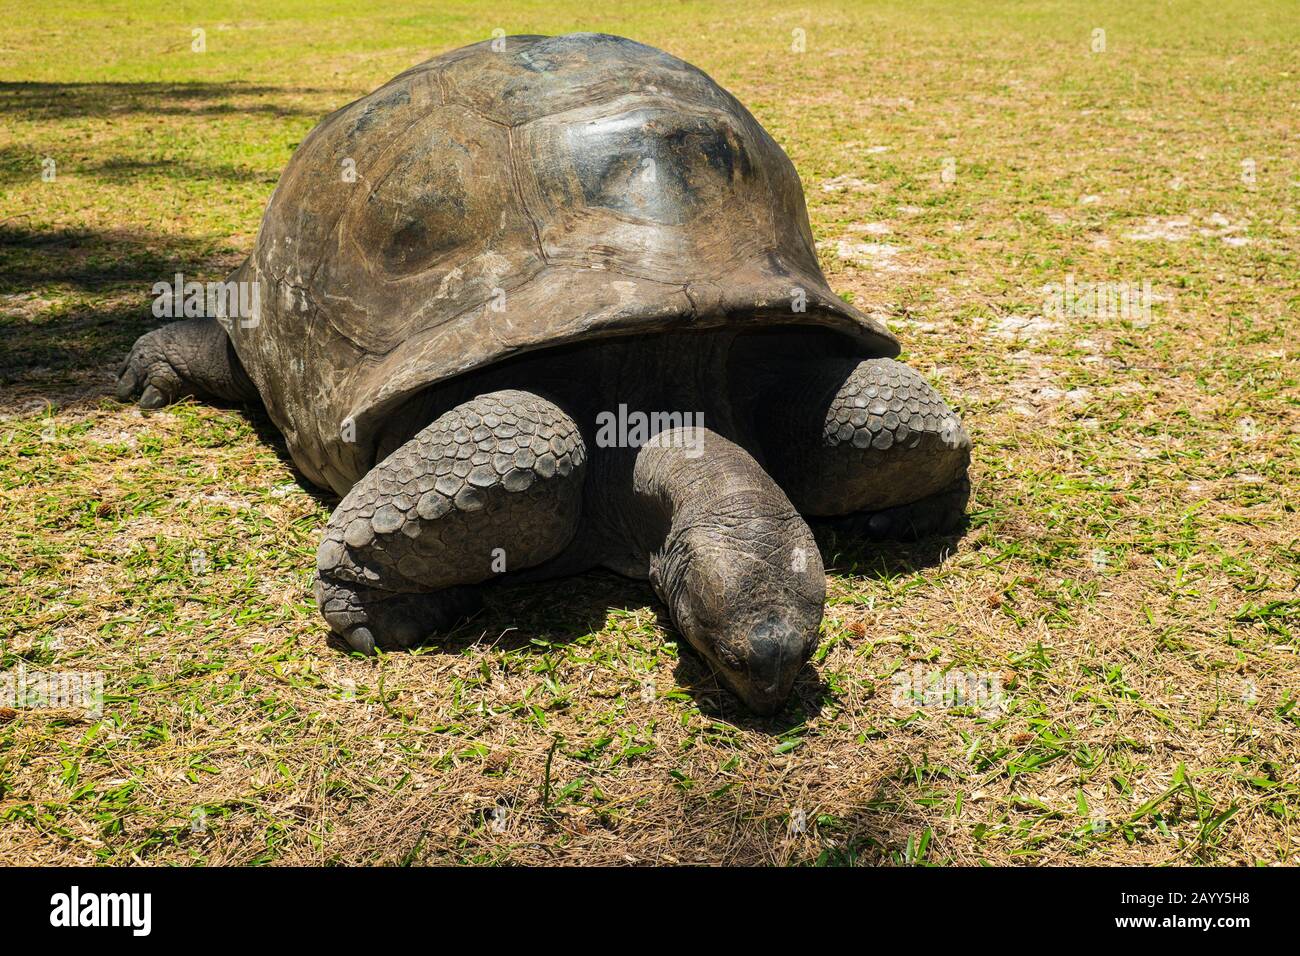 Aldabra Tortue géante (Aldabrachlys gigantea) à l'île de Curieuse, un havre protégé pour les tortues menacées Banque D'Images